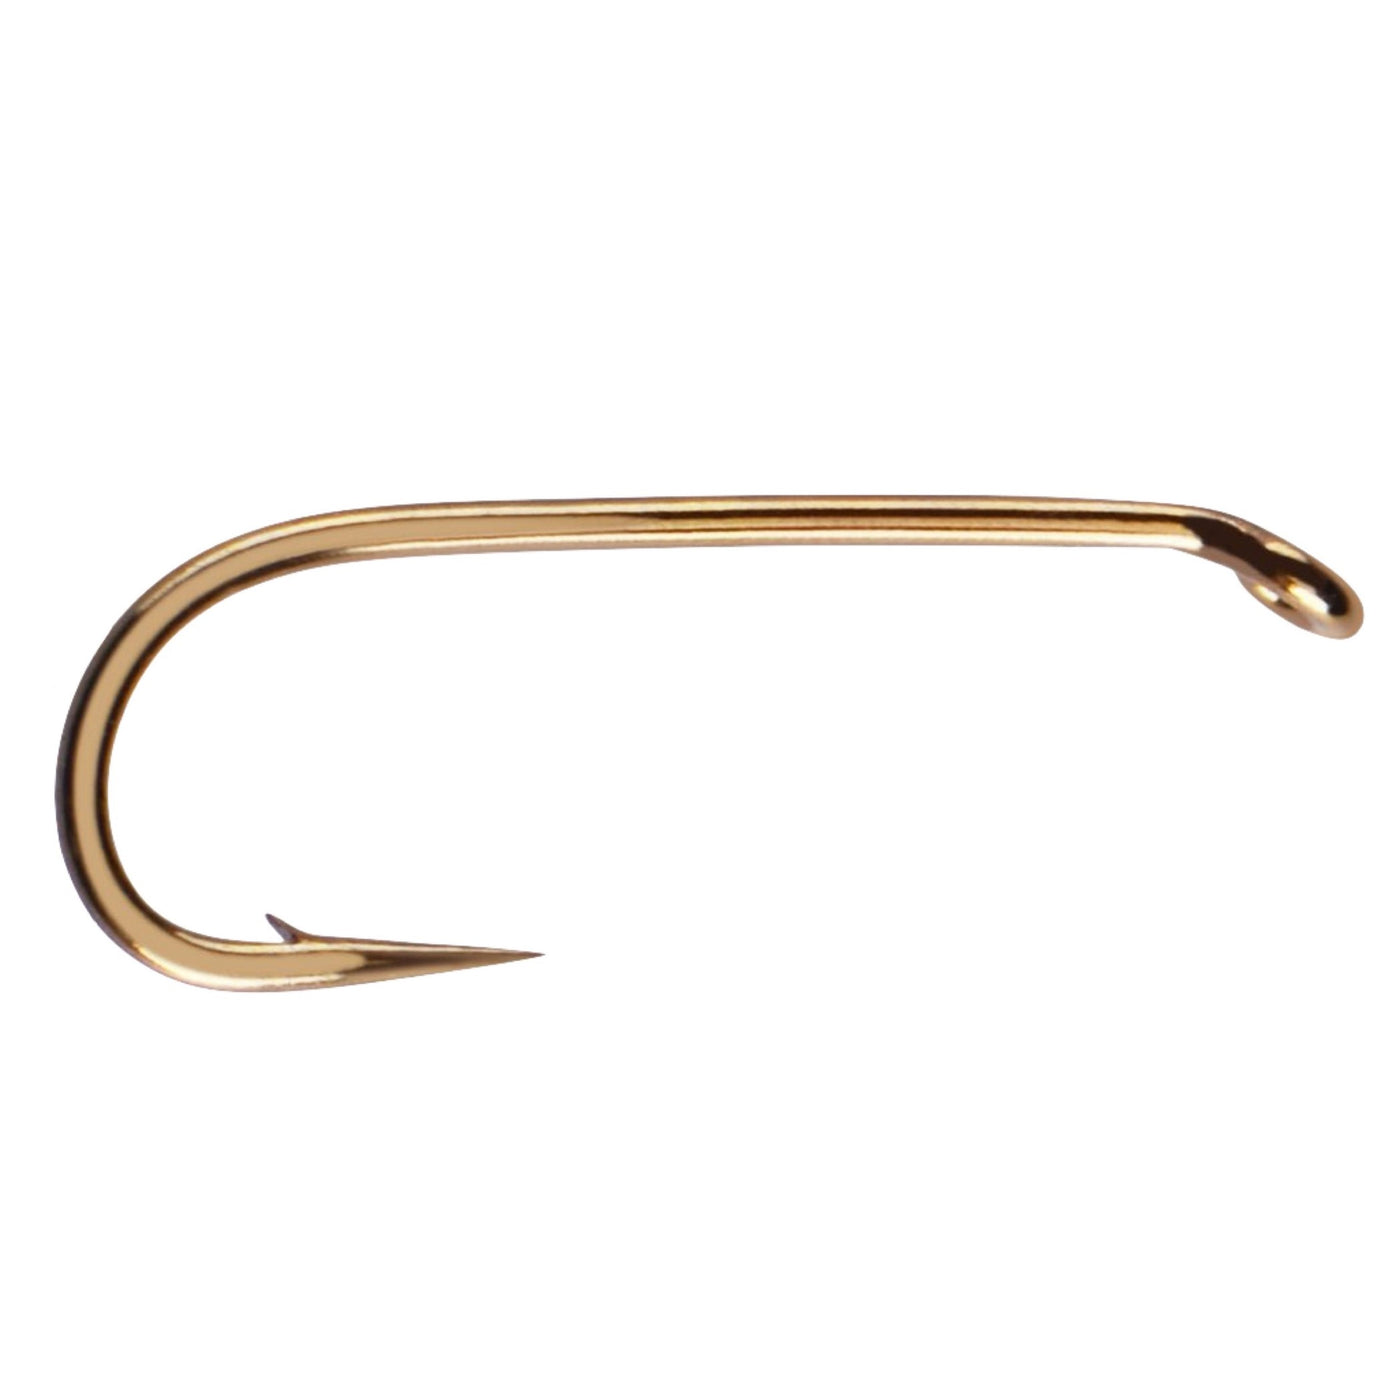 Mustad Signature Streamer Hook R73-9671 10